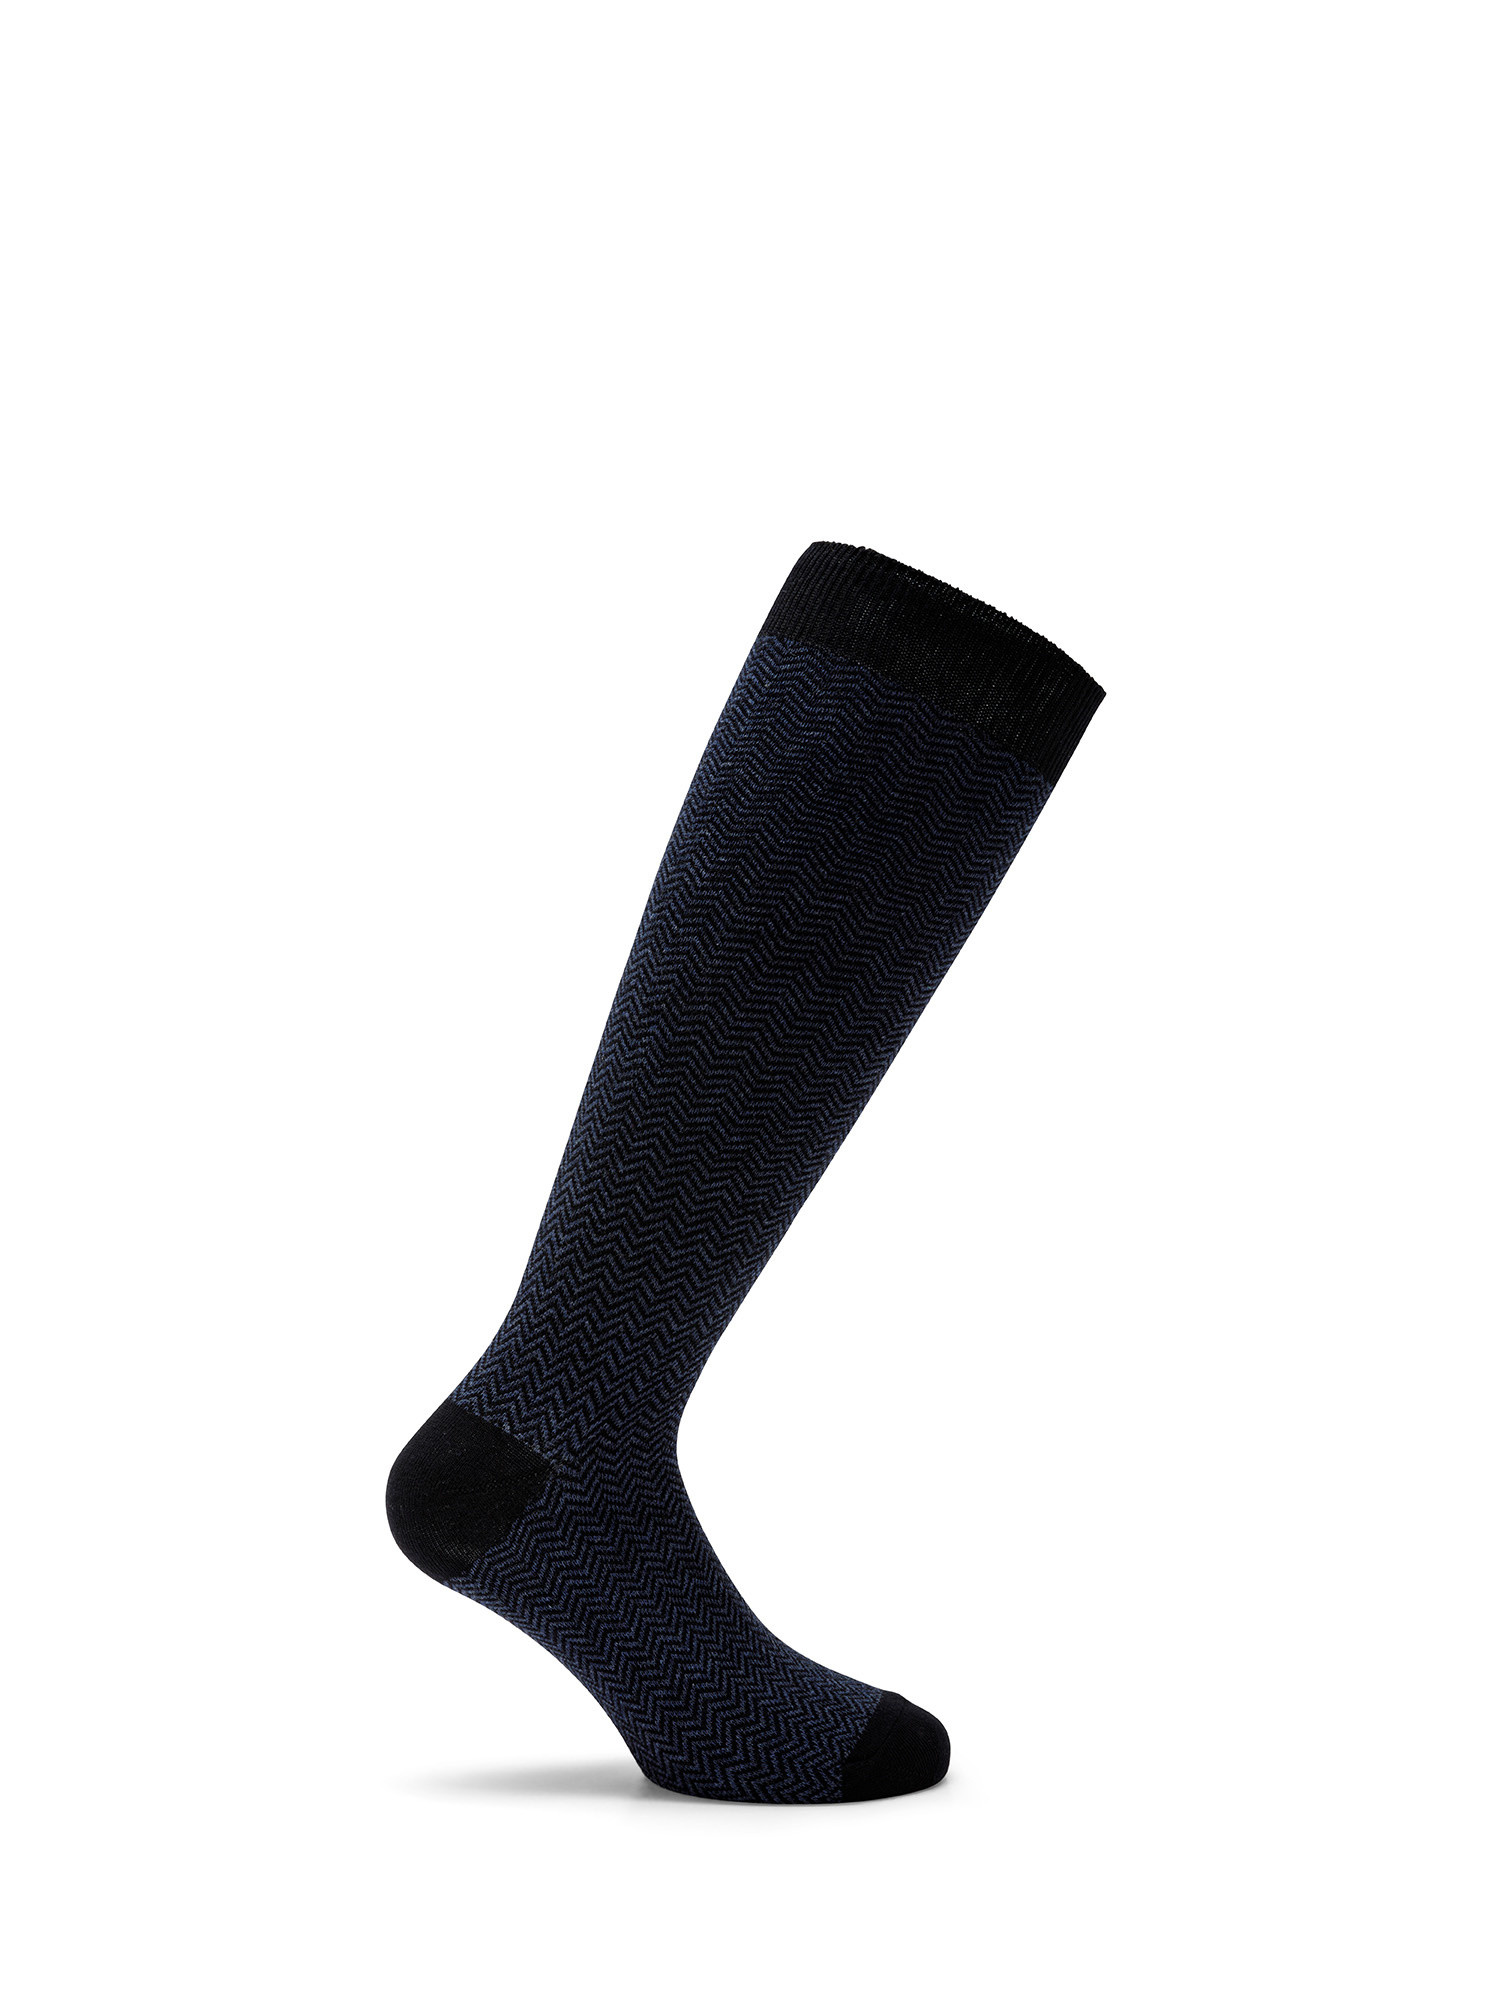 Luca D'Altieri - Set of 3 patterned long socks, Dark Blue, large image number 1